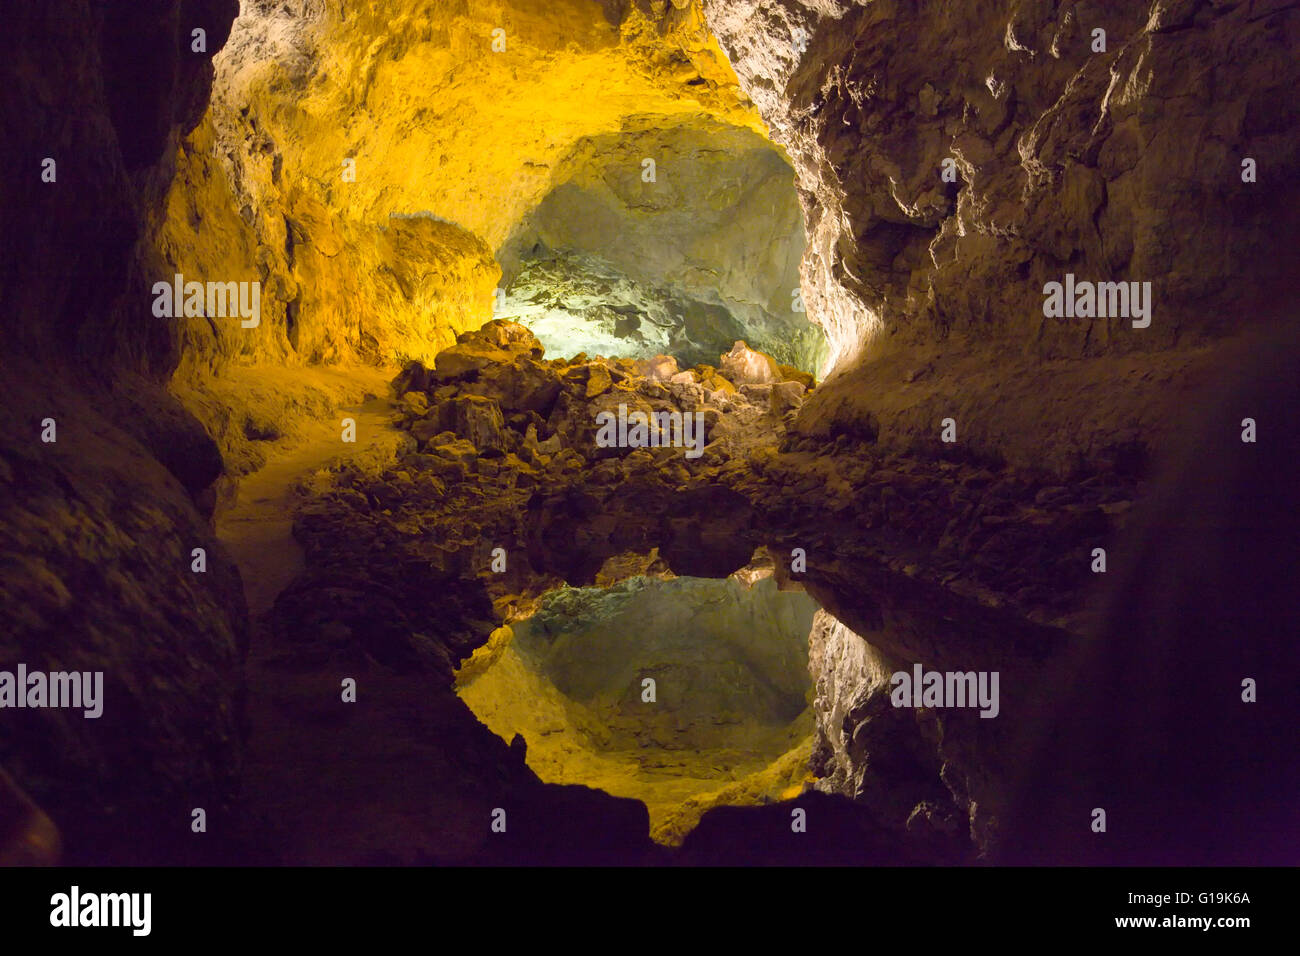 Parfait reflet dans un bassin souterrain, la grotte verte, Lanzarote Banque D'Images